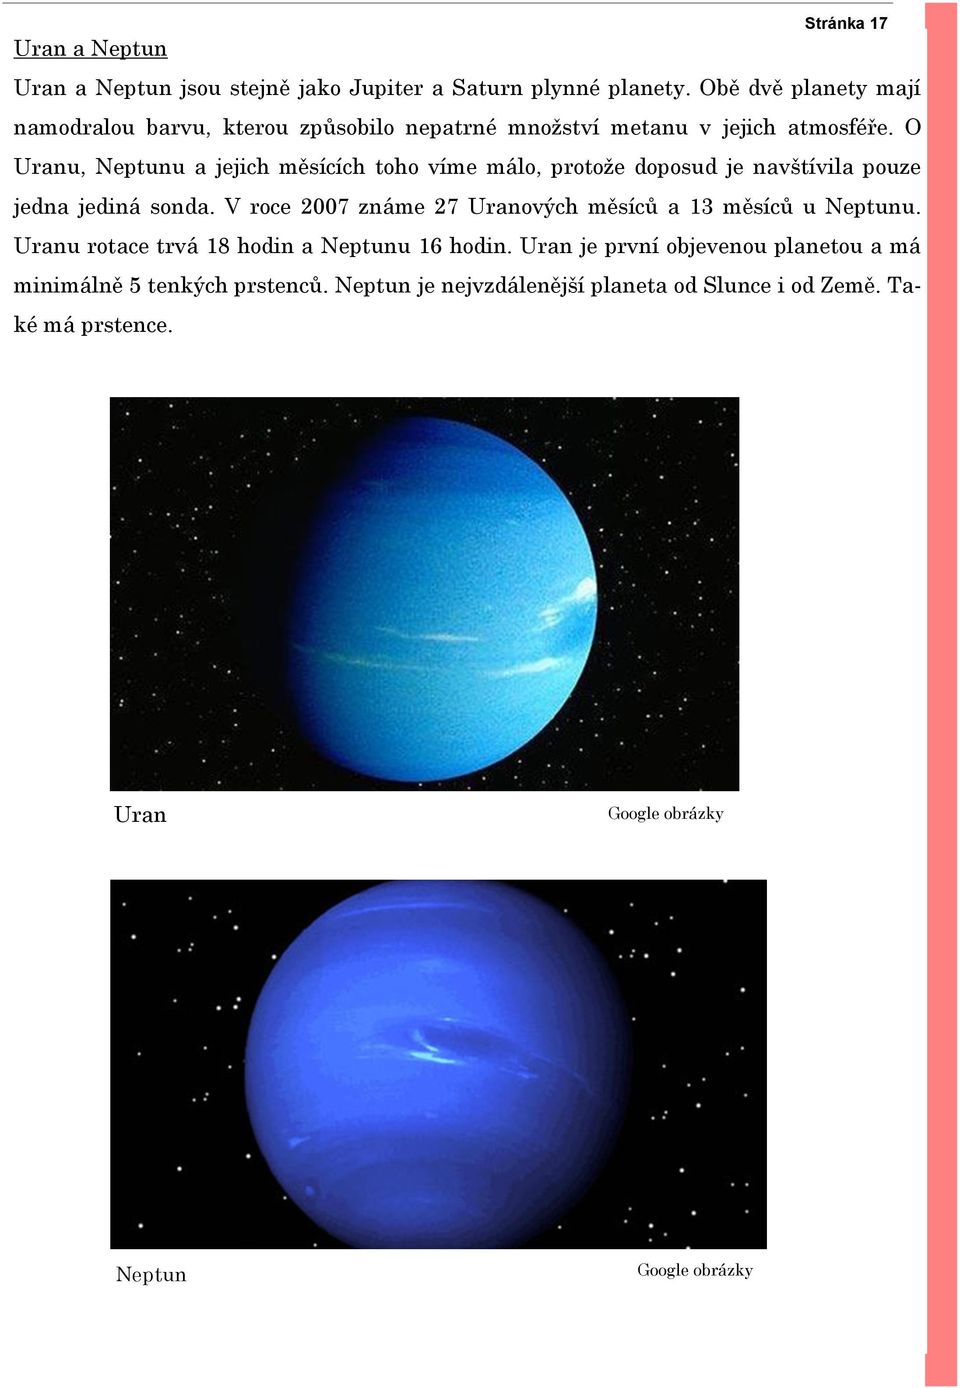 O Uranu, Neptunu a jejich měsících toho víme málo, protože doposud je navštívila pouze jedna jediná sonda.